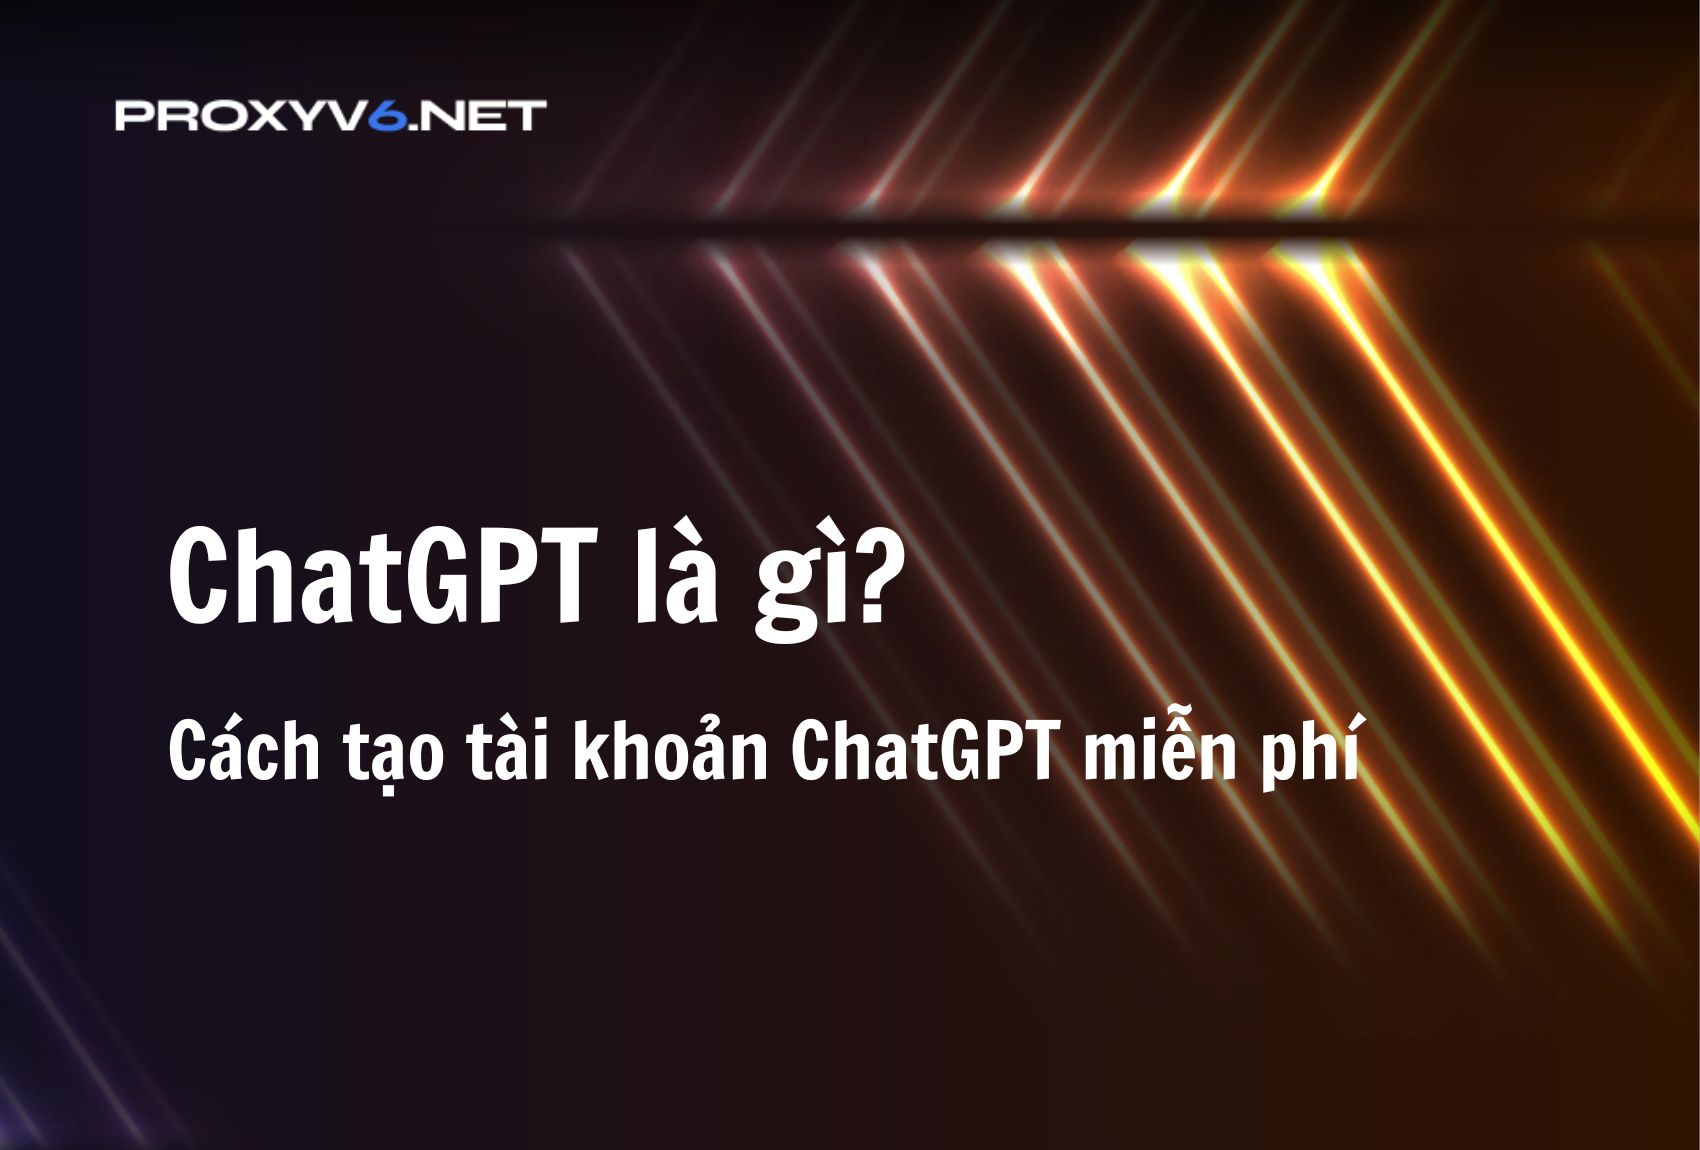 ChatGPT là gì? Cách tạo tài khoản ChatGPT miễn phí